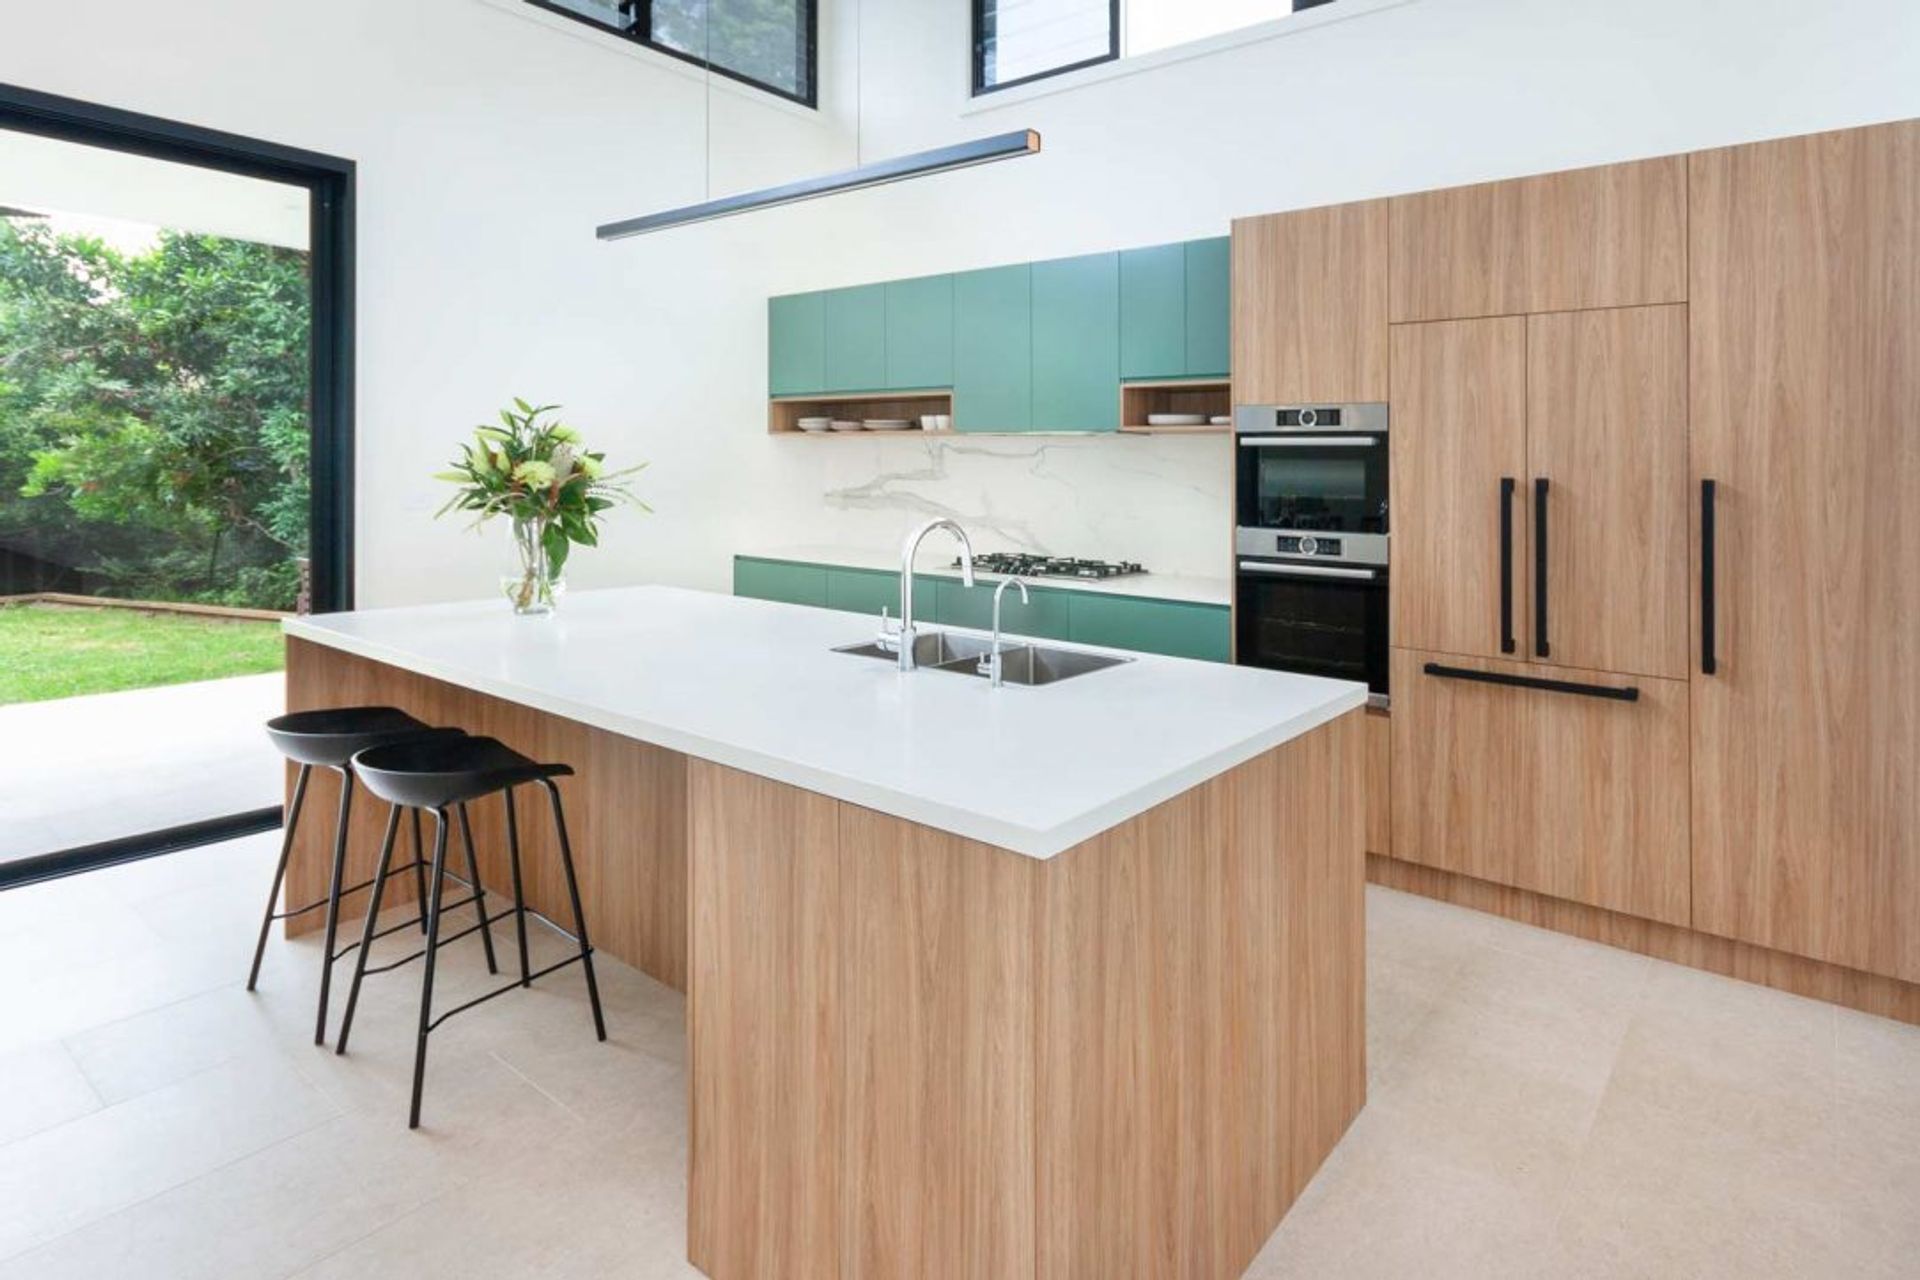 kitchen-design-sydney-modern-bosch-fisher-paykel-green-timber-premier-kitchens-02-1084x723.jpg